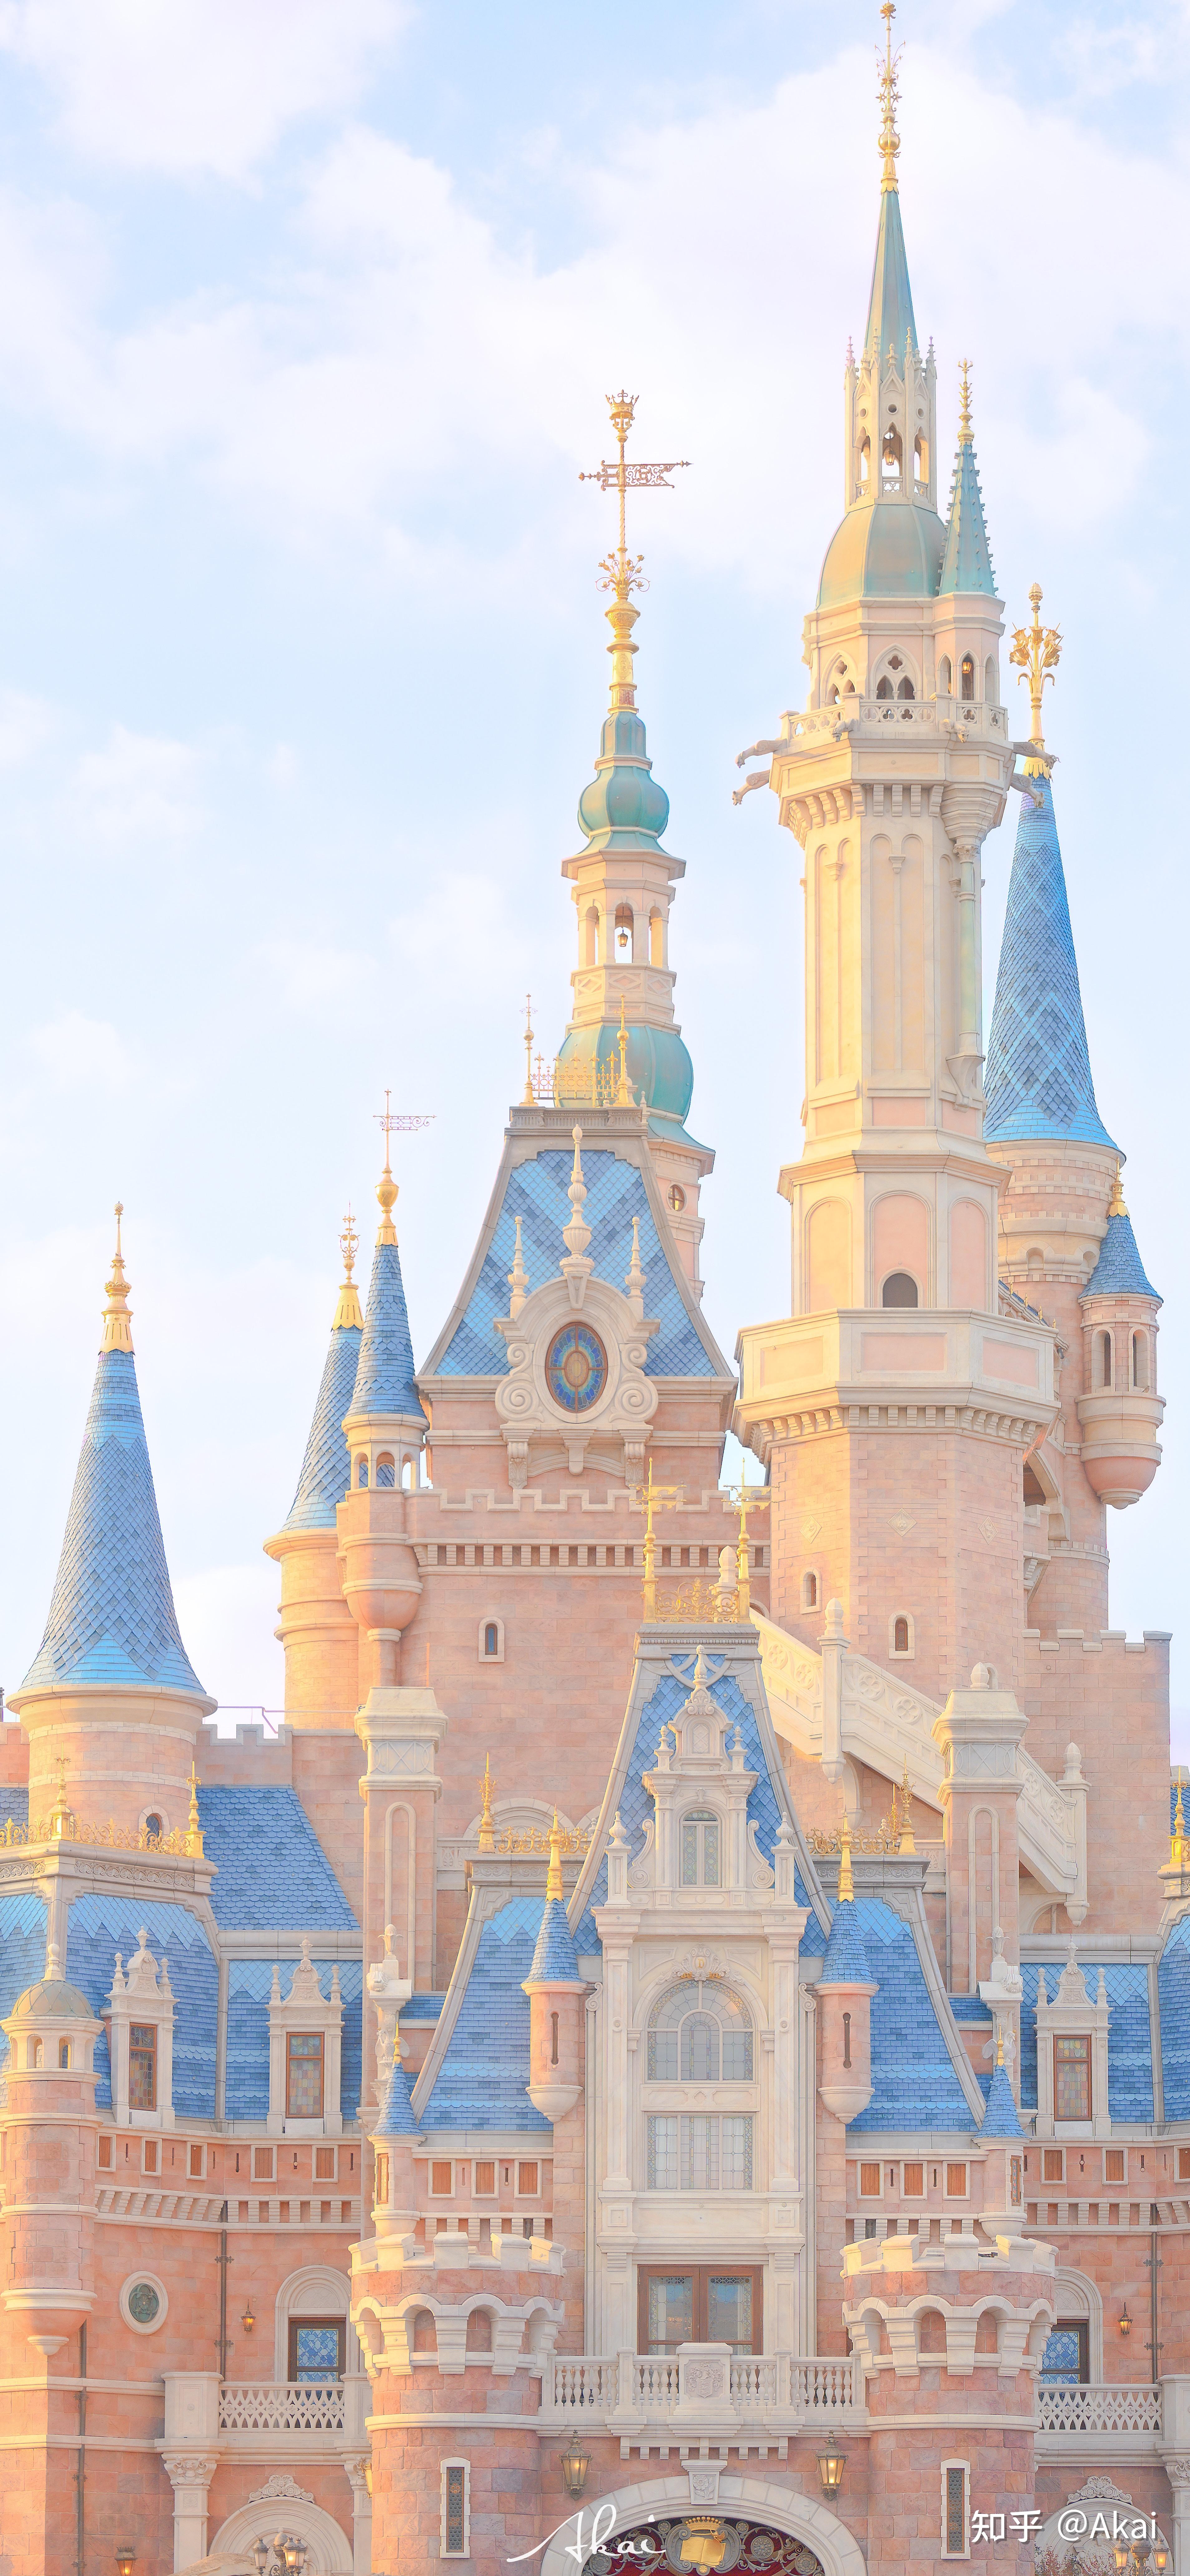 迪士尼城堡壁纸